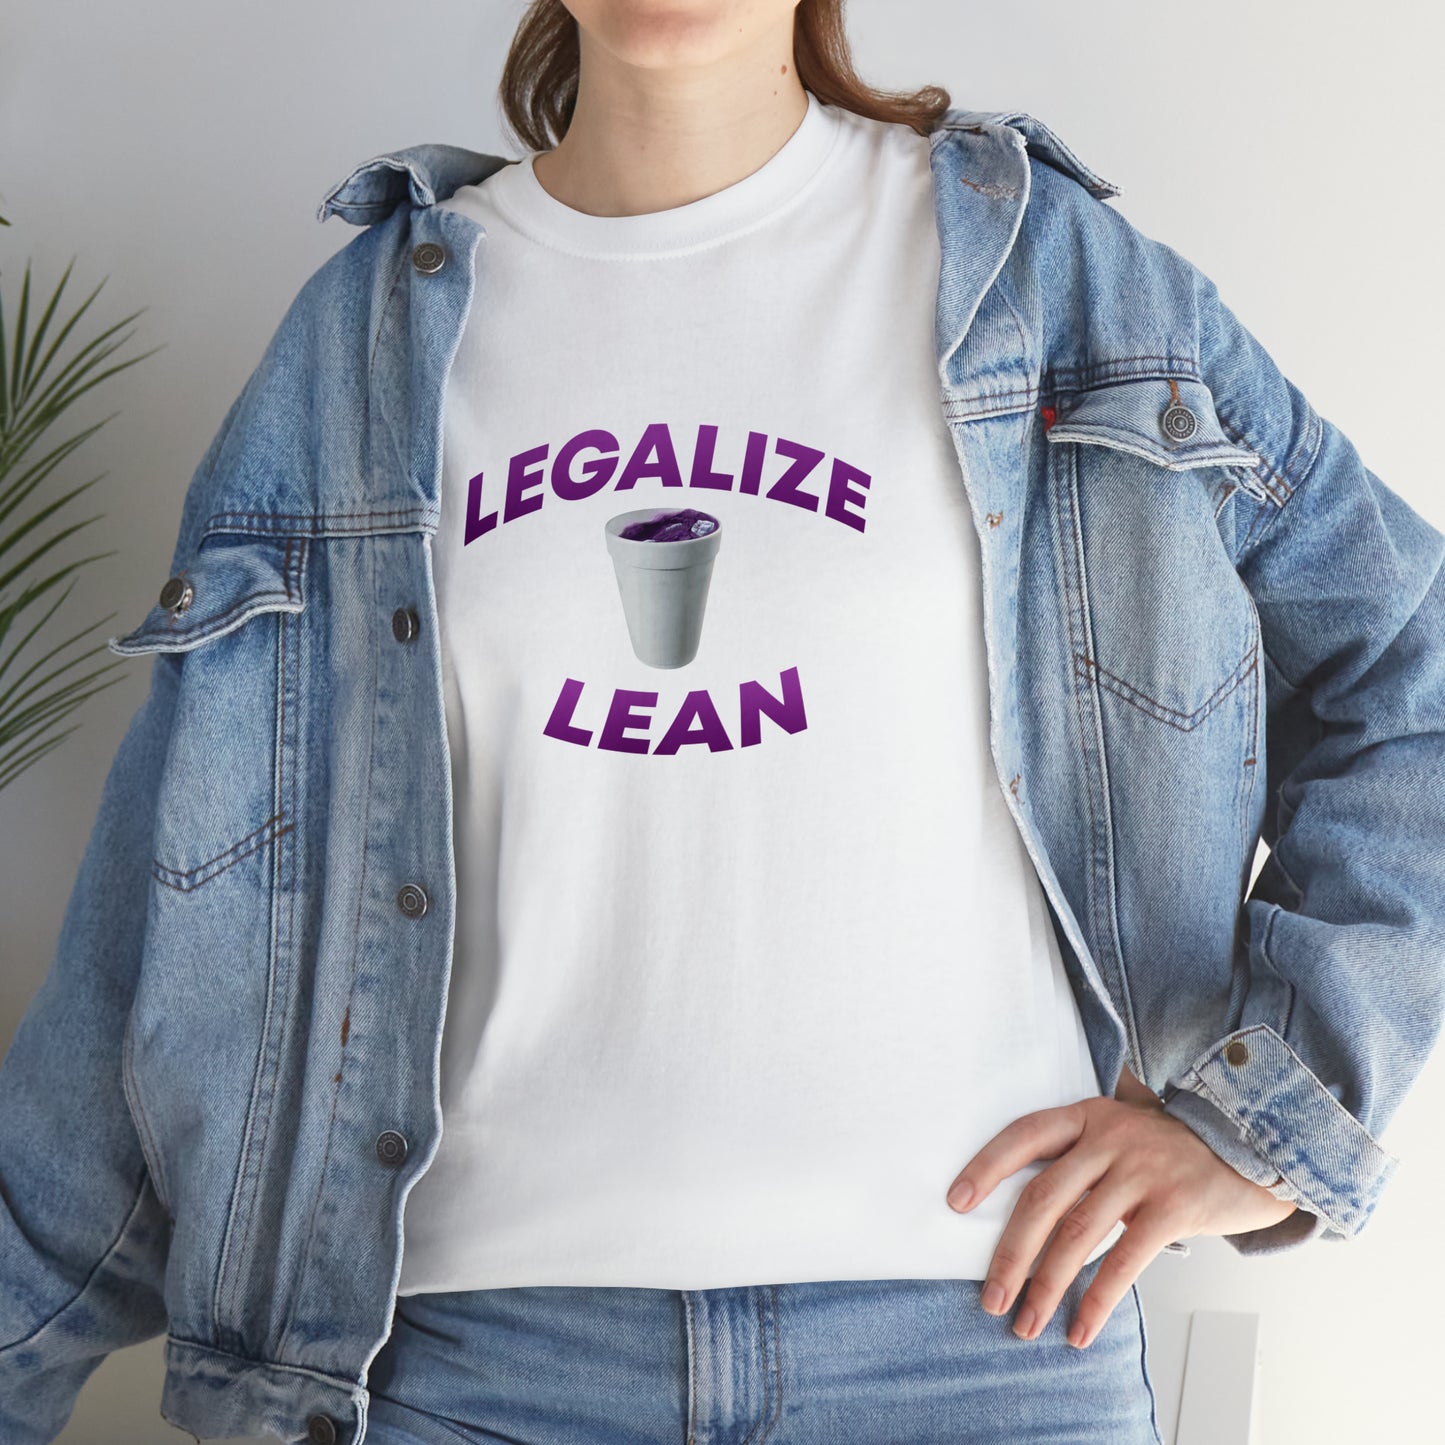 LEGALIZE LEAN T-SHIRT